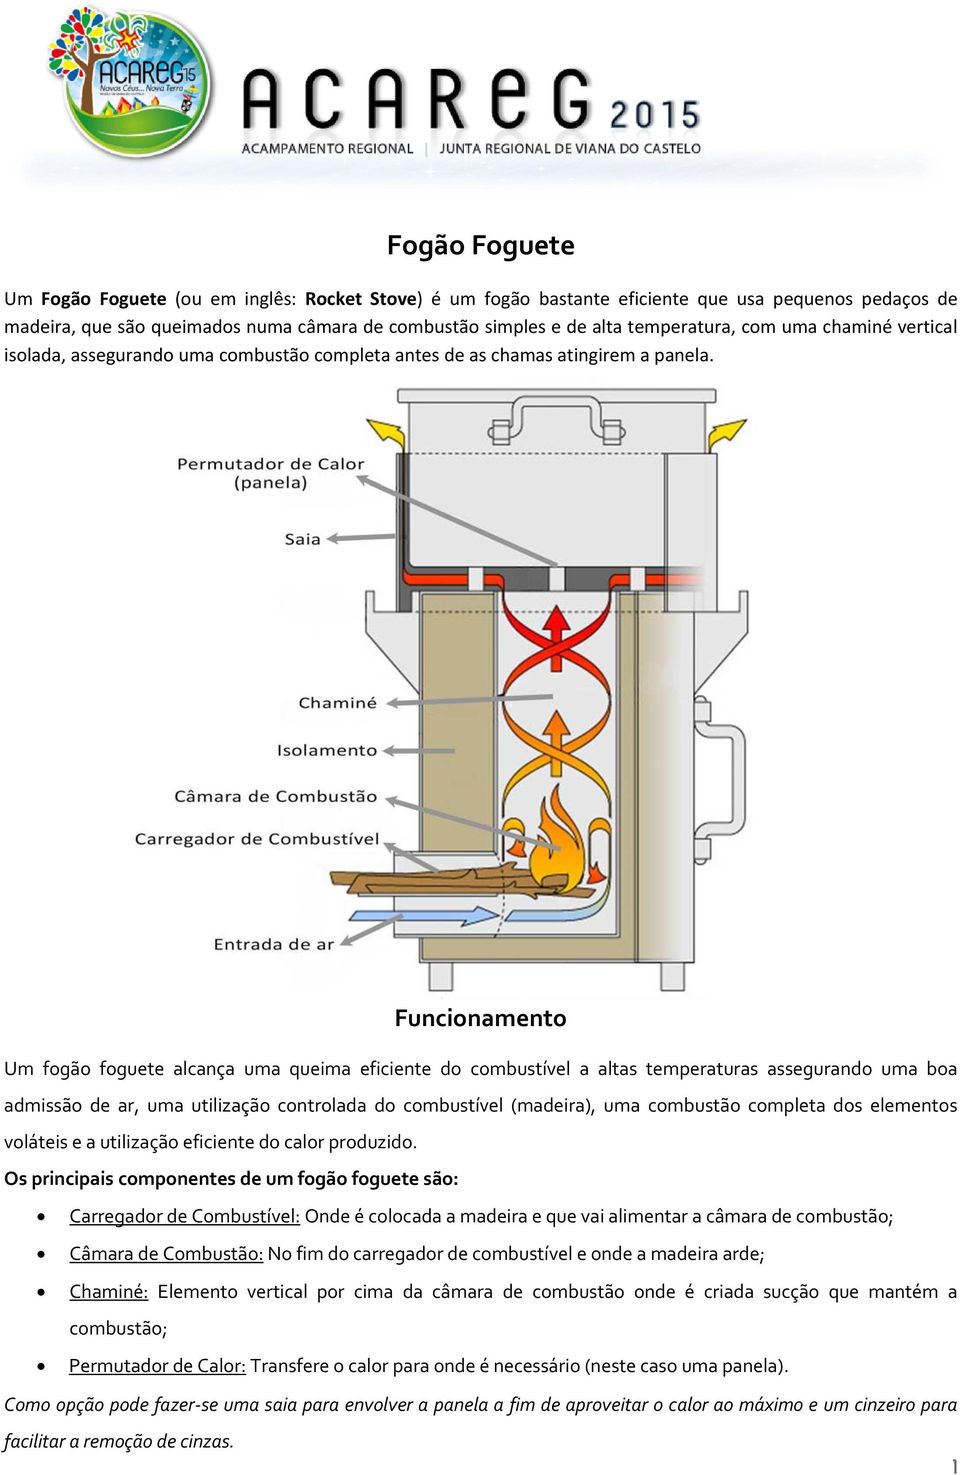 Funcionamento Um fogão foguete alcança uma queima eficiente do combustível a altas temperaturas assegurando uma boa admissão de ar, uma utilização controlada do combustível (madeira), uma combustão